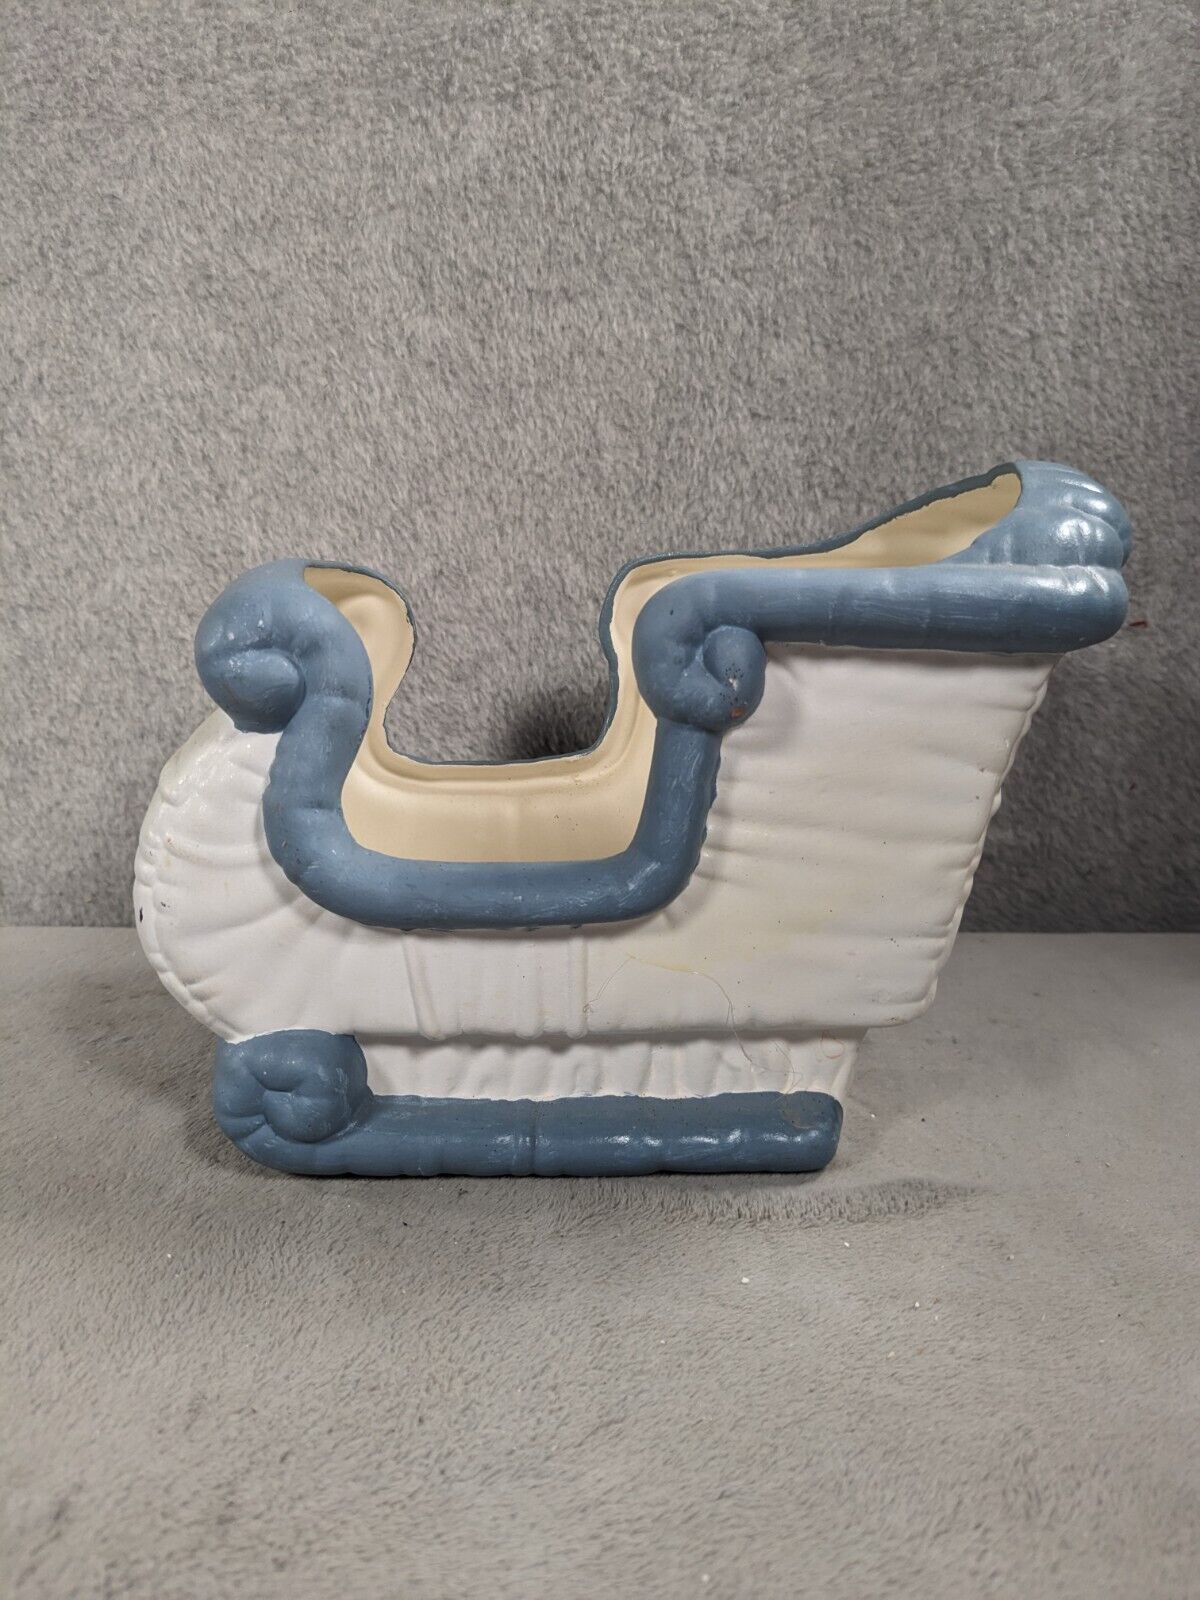 Vintage Kimple Mold Ceramic Santa Christmas Sleigh Tan White/Blue Trim Planter